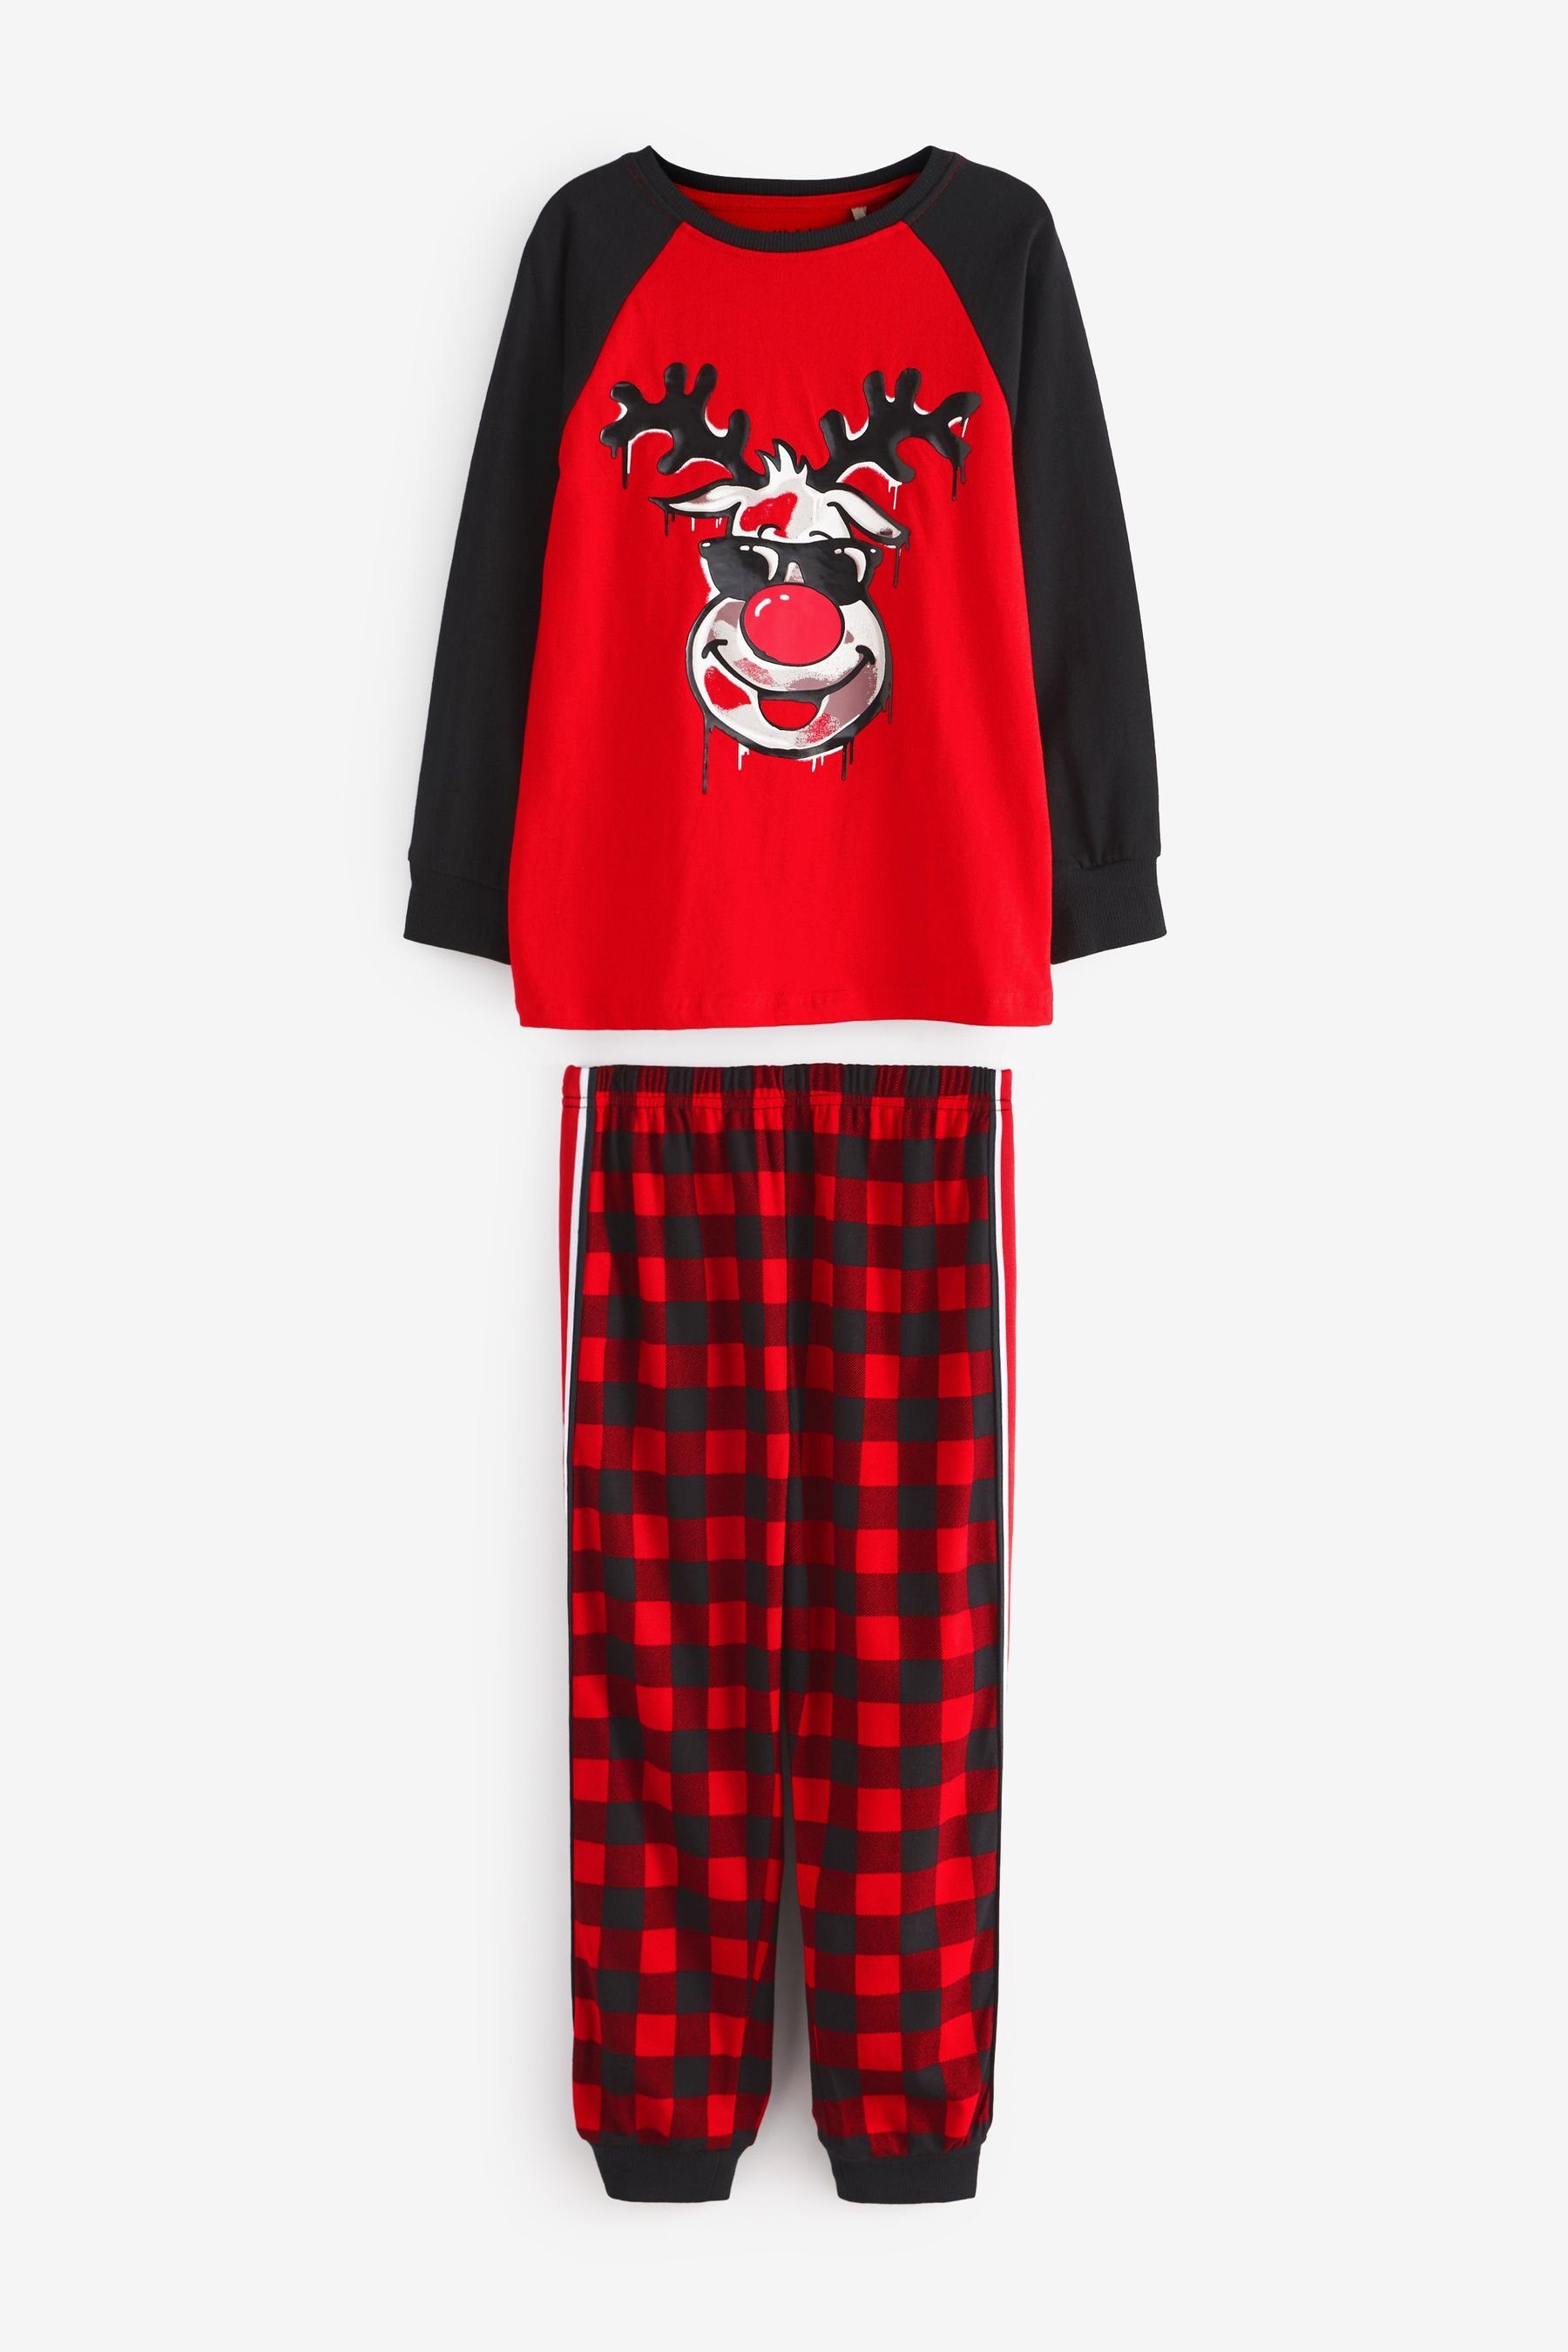 Next Schlafanzug Weihnachtlicher Pyjama (2 tlg) Red Reindeer Check